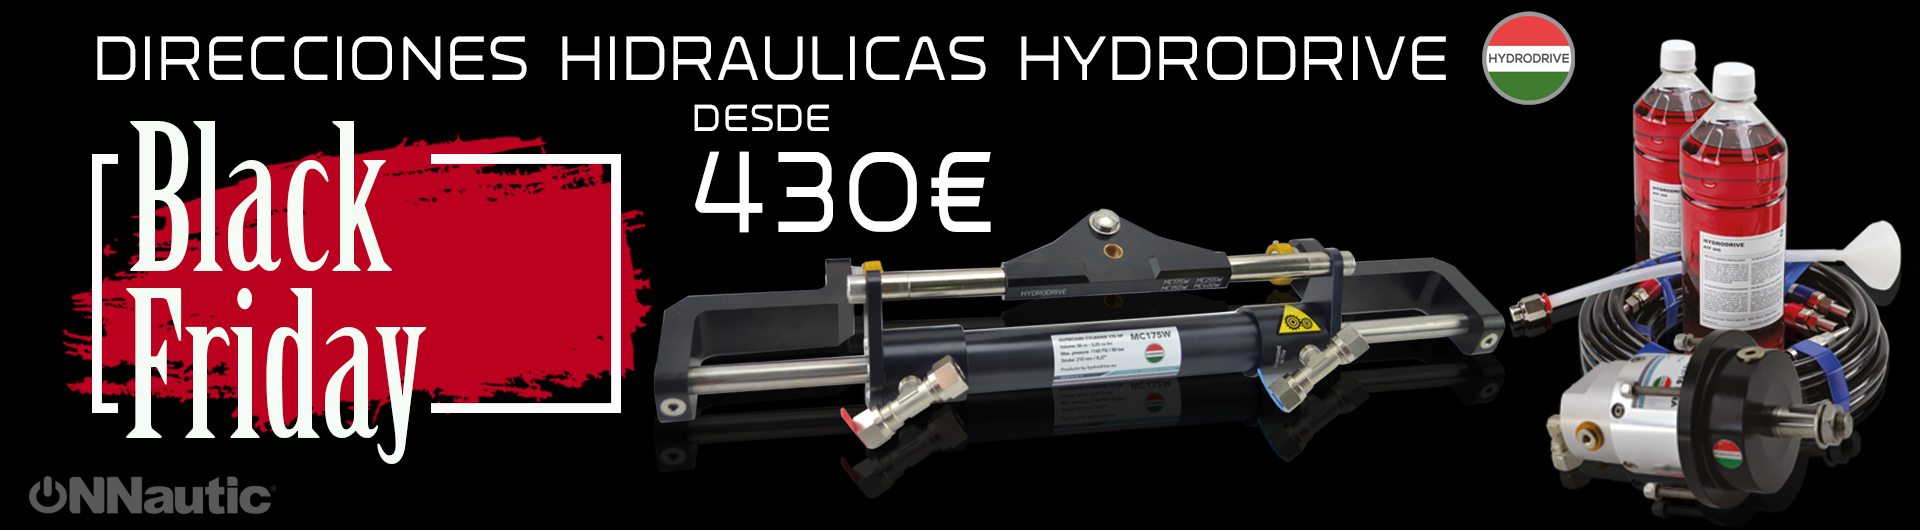 Black Friday en Direcciones Hidráulicas Hydrodrive desde 430€